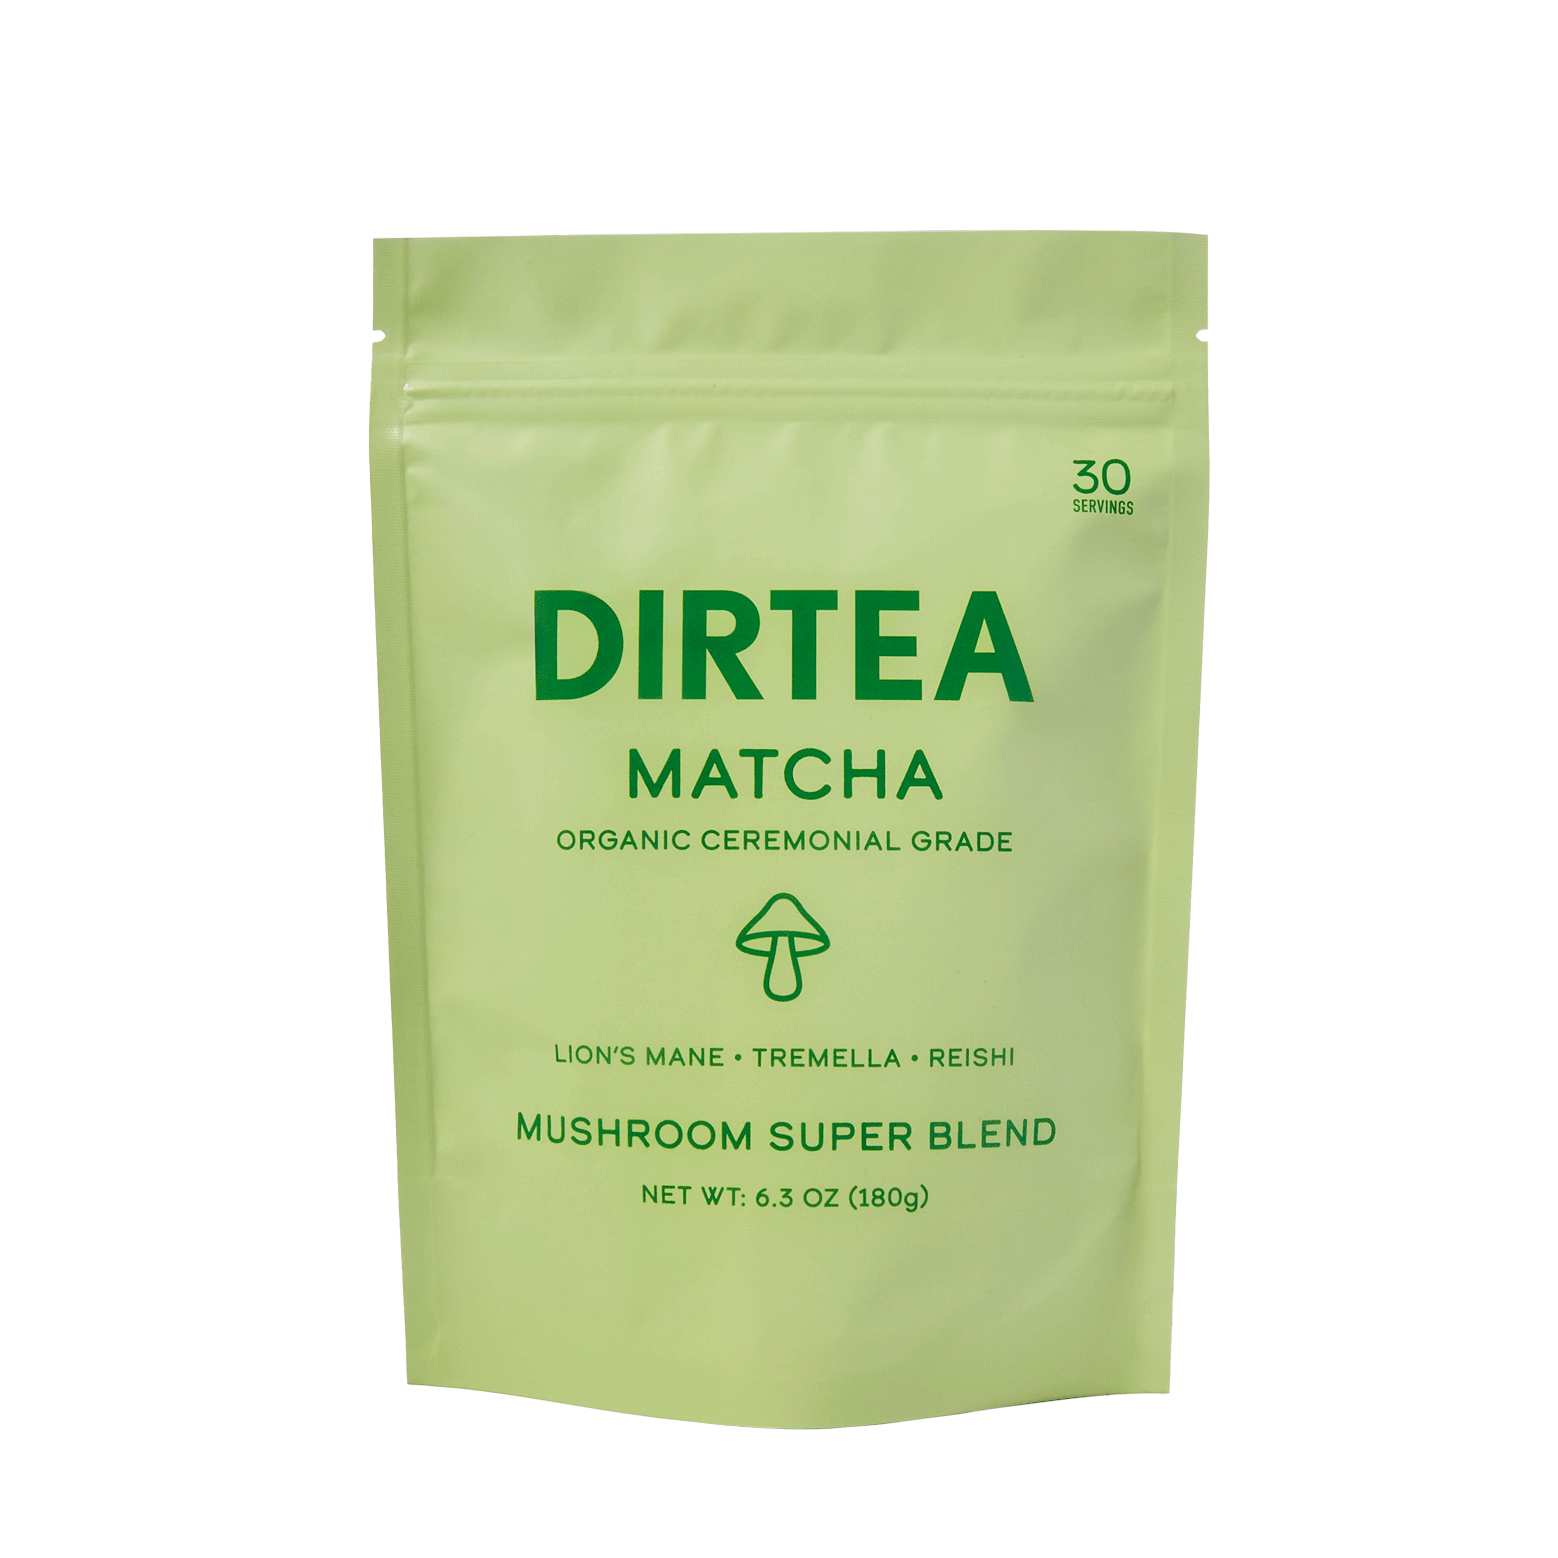 Die Pilztees von Dirtea helfen bei der Verbesserung des Energieniveaus, der Immunität, einer besseren Haut und einem besseren Schlaf